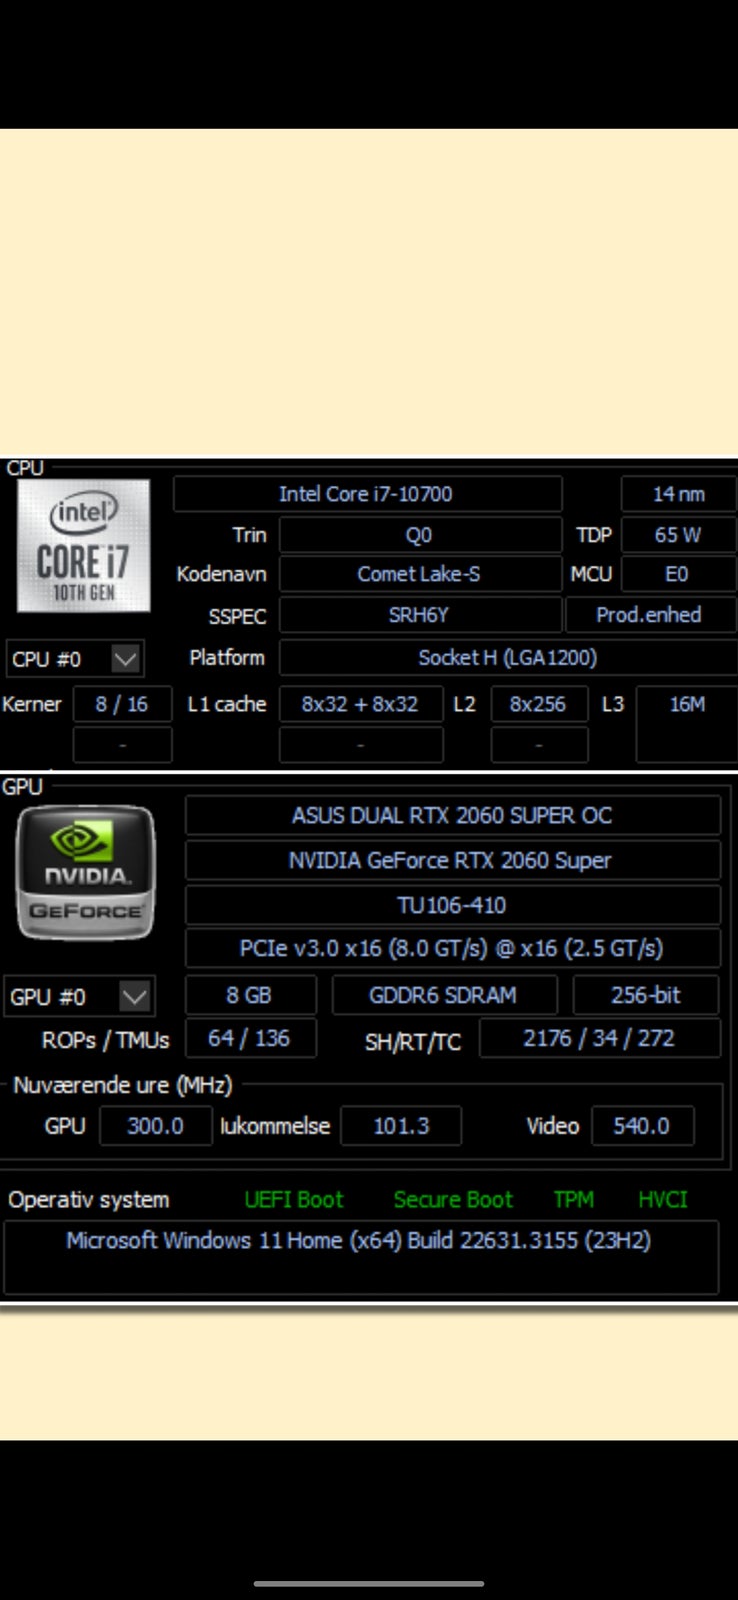 Acer, Komplet Gaming Setup Opgraderet Predator PO3-620,